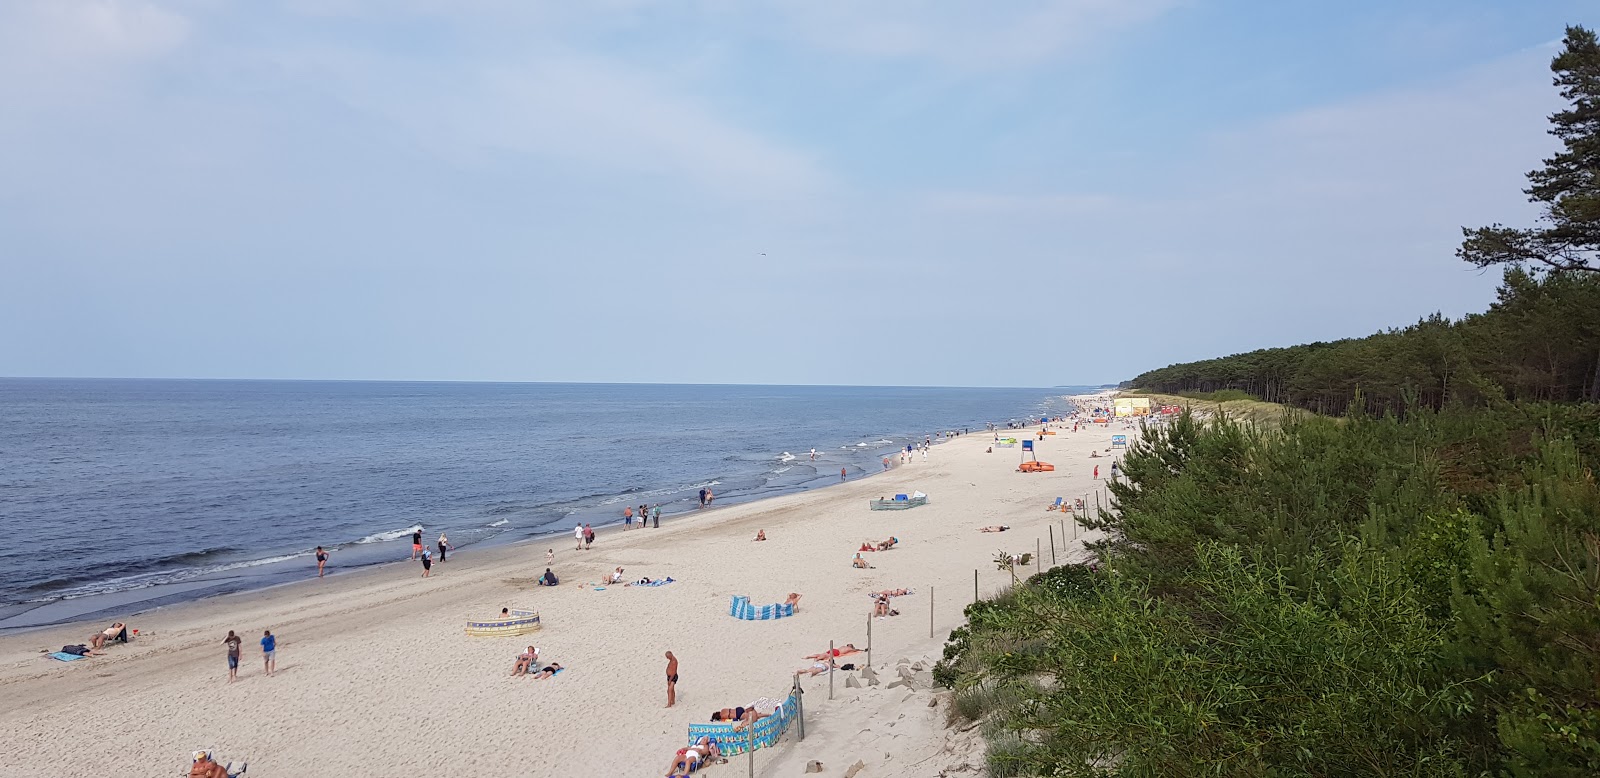 Foto de Mrzezyno Beach com areia fina e brilhante superfície